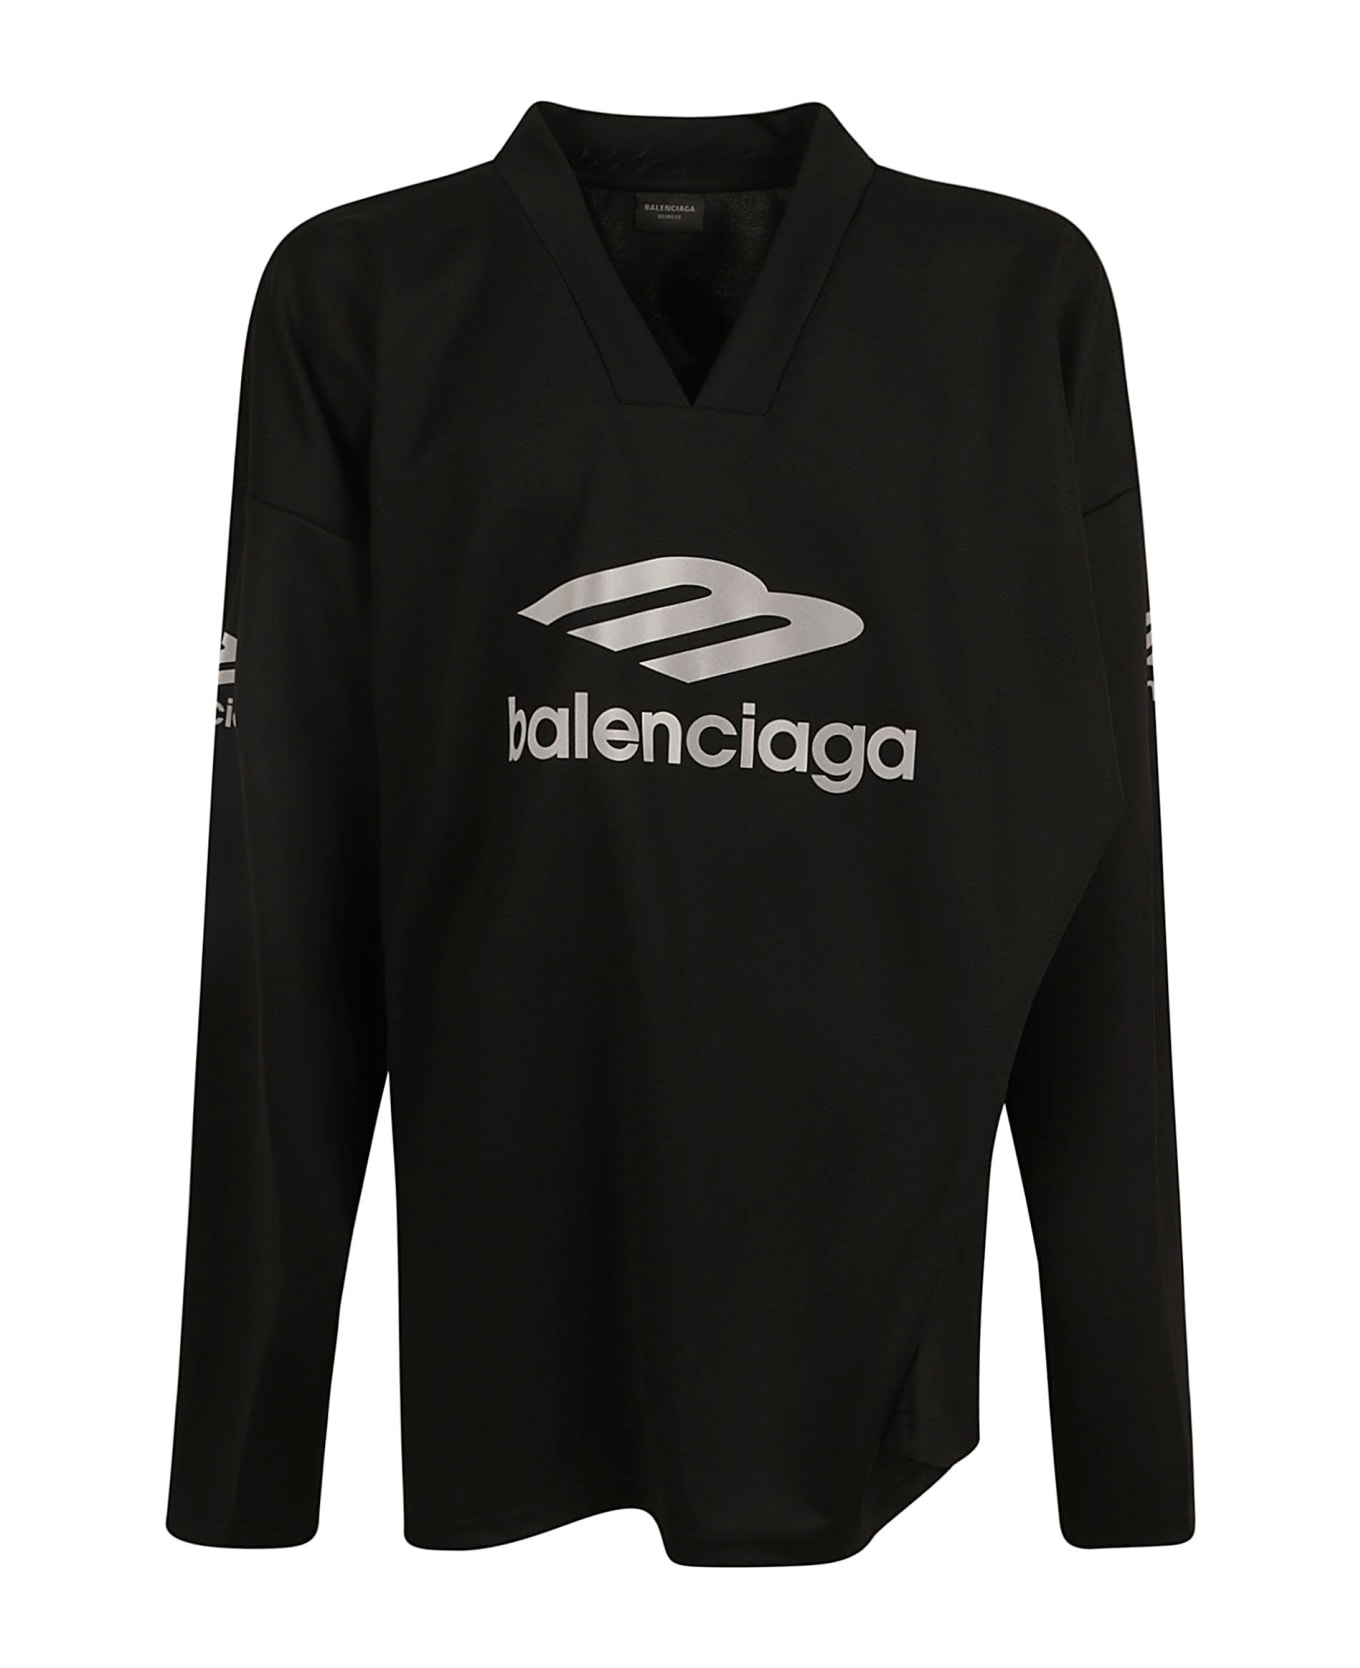 Balenciaga Sweatshirt - Black